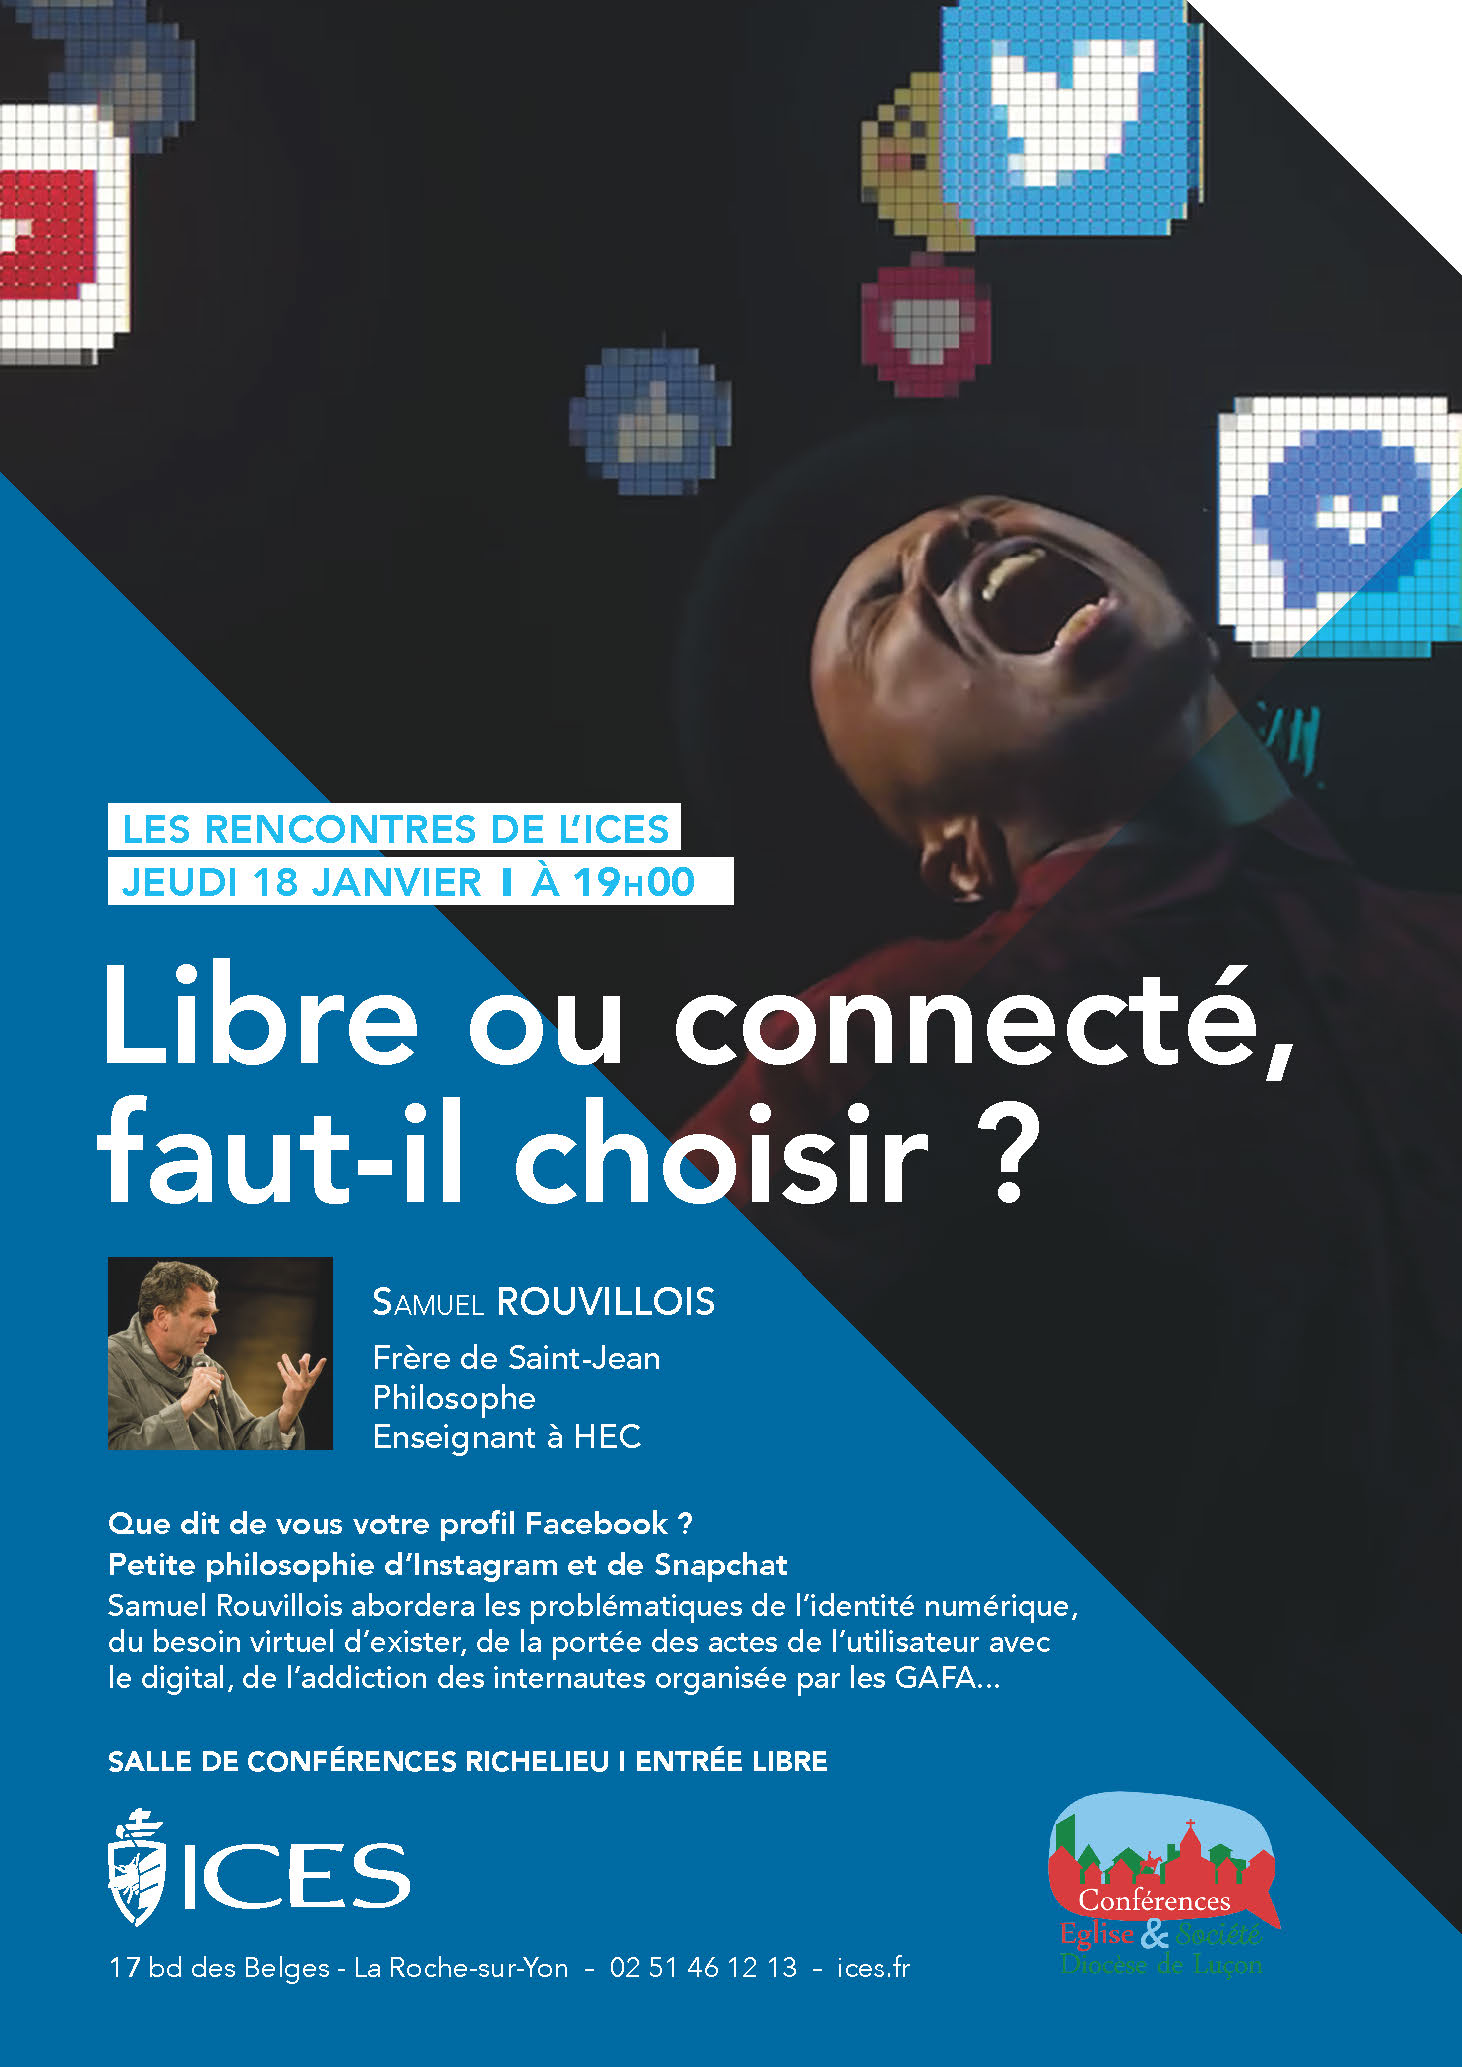 Conférence : “Libre ou connecté, faut-il choisir ?” – Samuel ROUVILLOIS – 18 janvier 2018 – La Roche-sur-Yon (85)